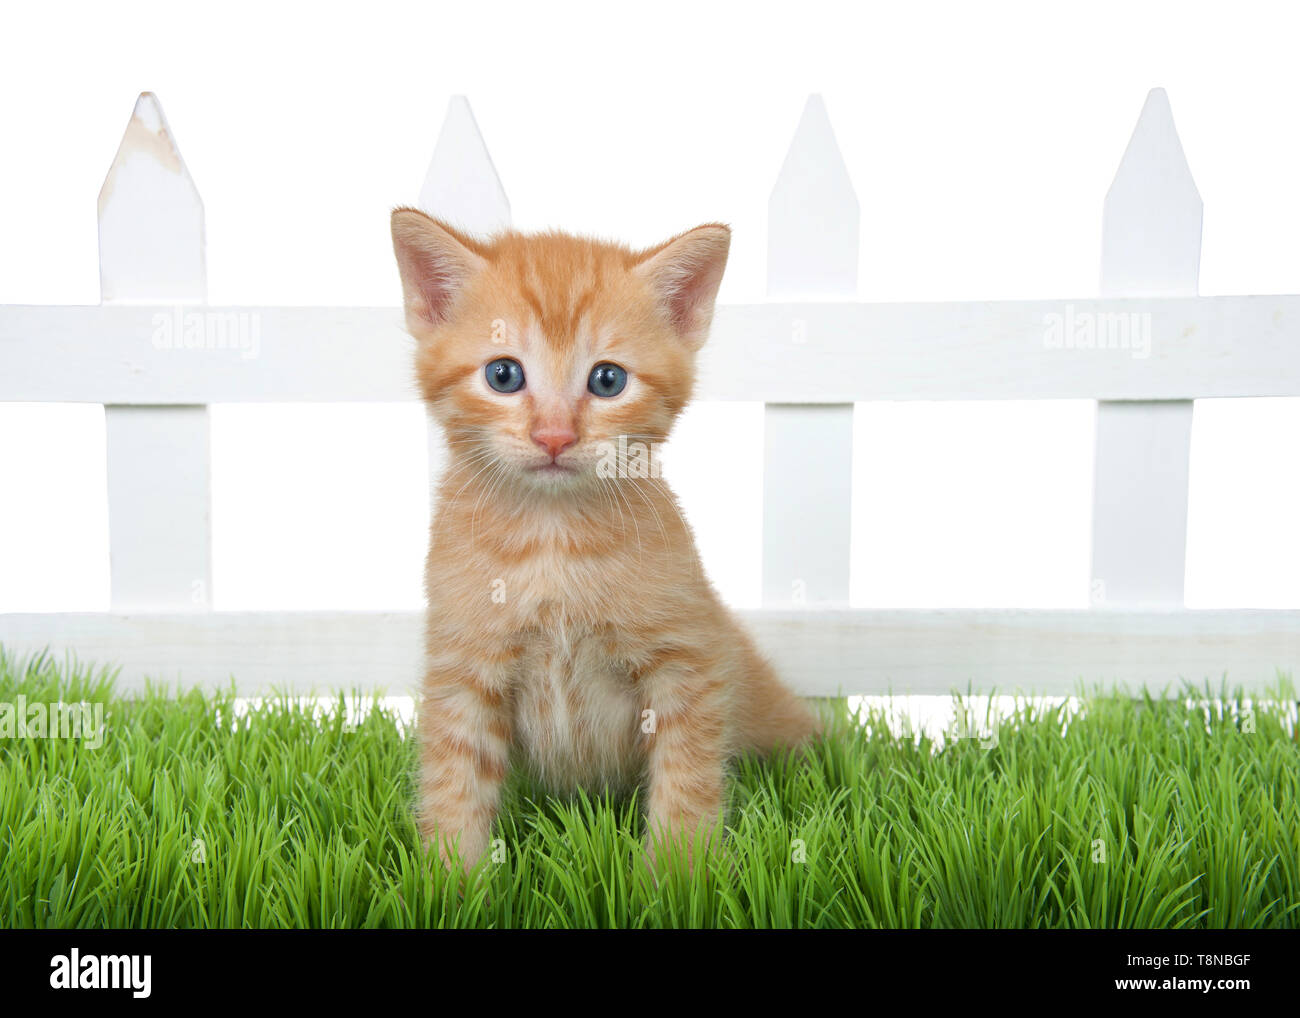 Mèo con cam cỡ nhỏ ngồi trên cỏ xanh: Bức ảnh này sẽ mang đến cho bạn cảm giác ngọt ngào và đáng yêu khi chiêm ngưỡng chú mèo con cam cỡ nhỏ, ngồi trên bãi cỏ xanh tươi. Nét mặt mèo con đang thư giãn, và ánh mắt sáng lấp lánh tỏa ra sự yêu thương vô tận. Hãy xem và cảm nhận ngay!